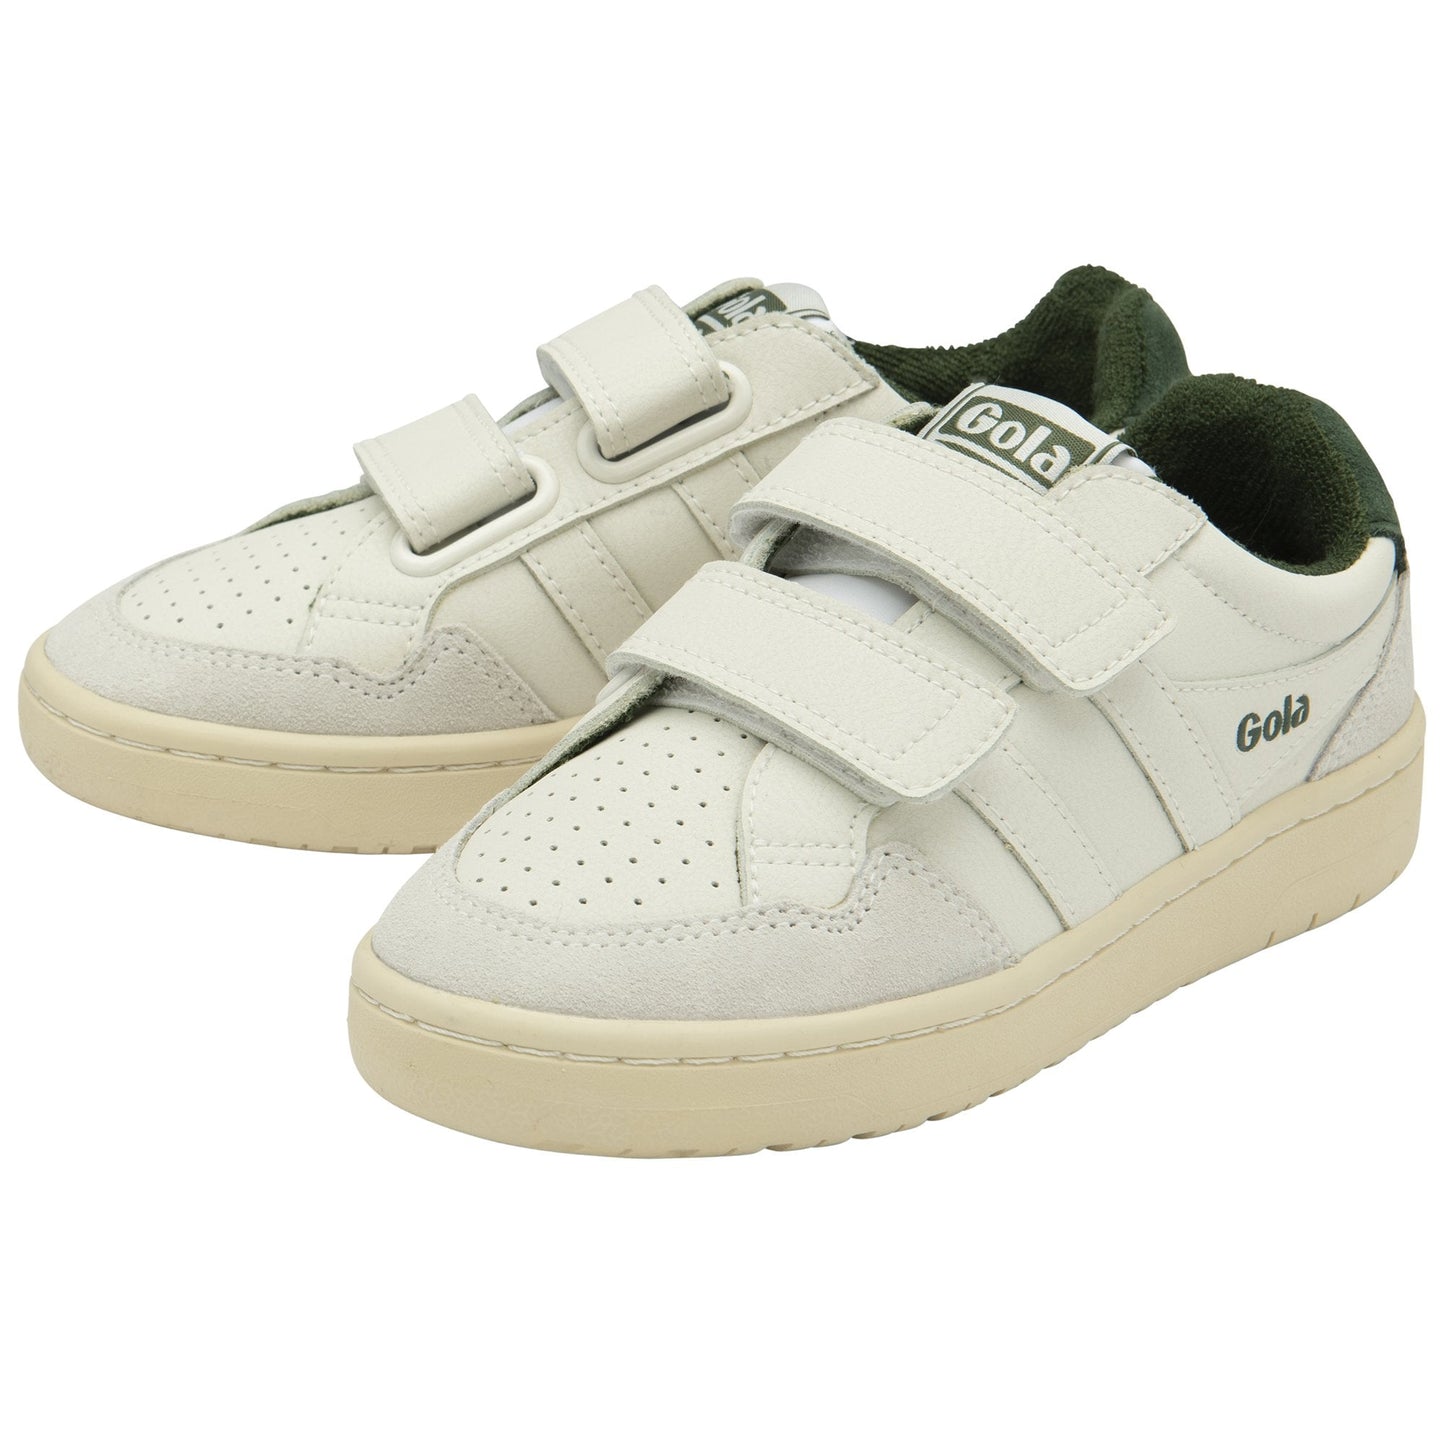 GOLA EAGLE STRAP Blanc Vert Sneakers Baskets